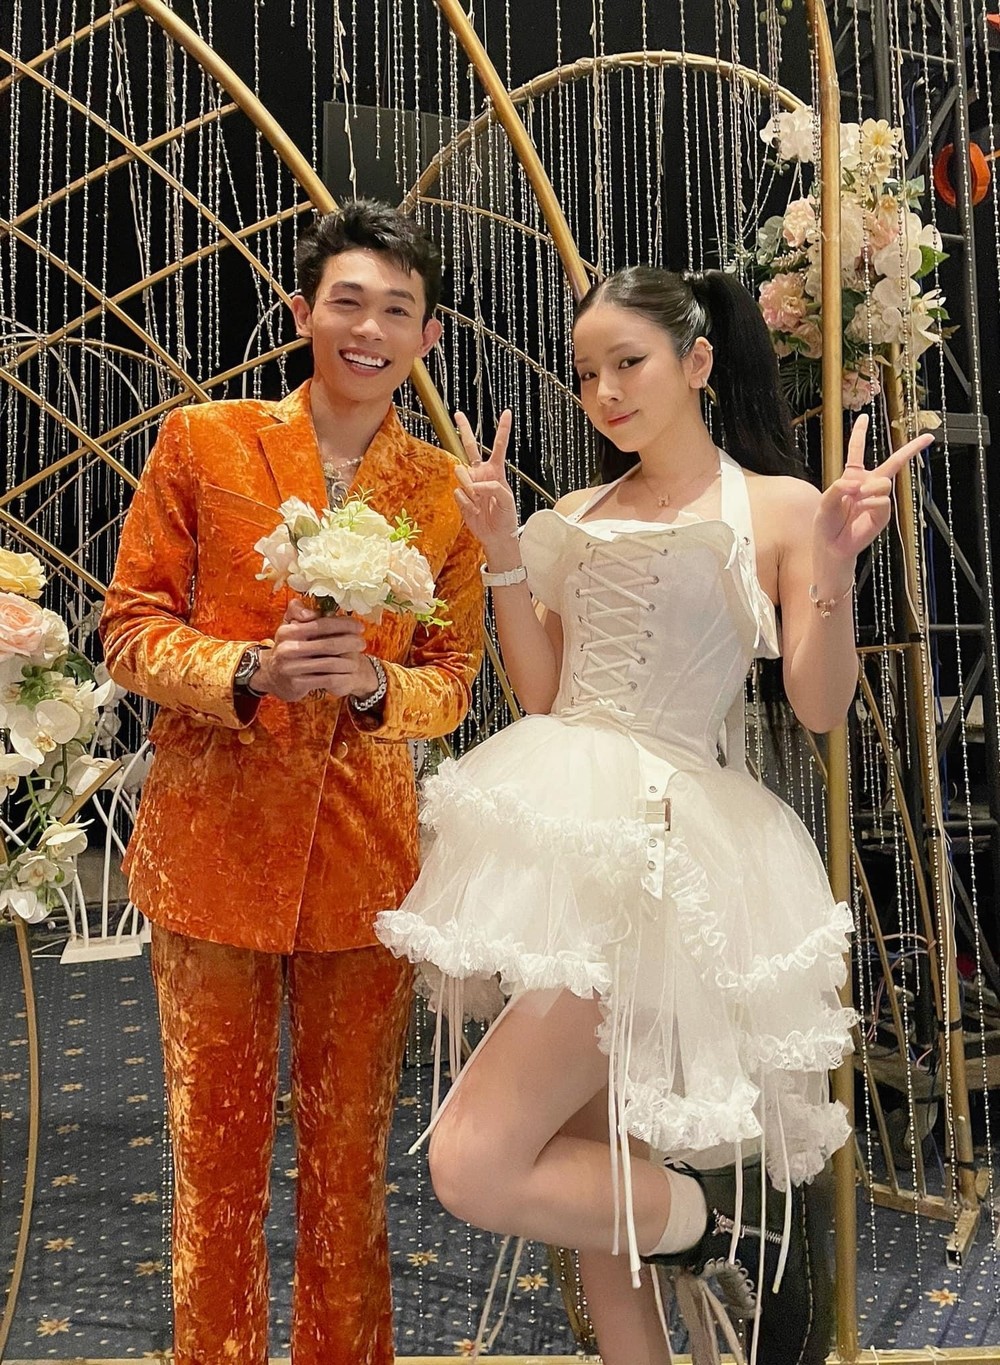 Hồng Thanh – DJ Mie bắt được hoa cưới, fan mong sớm báo tin hỷ